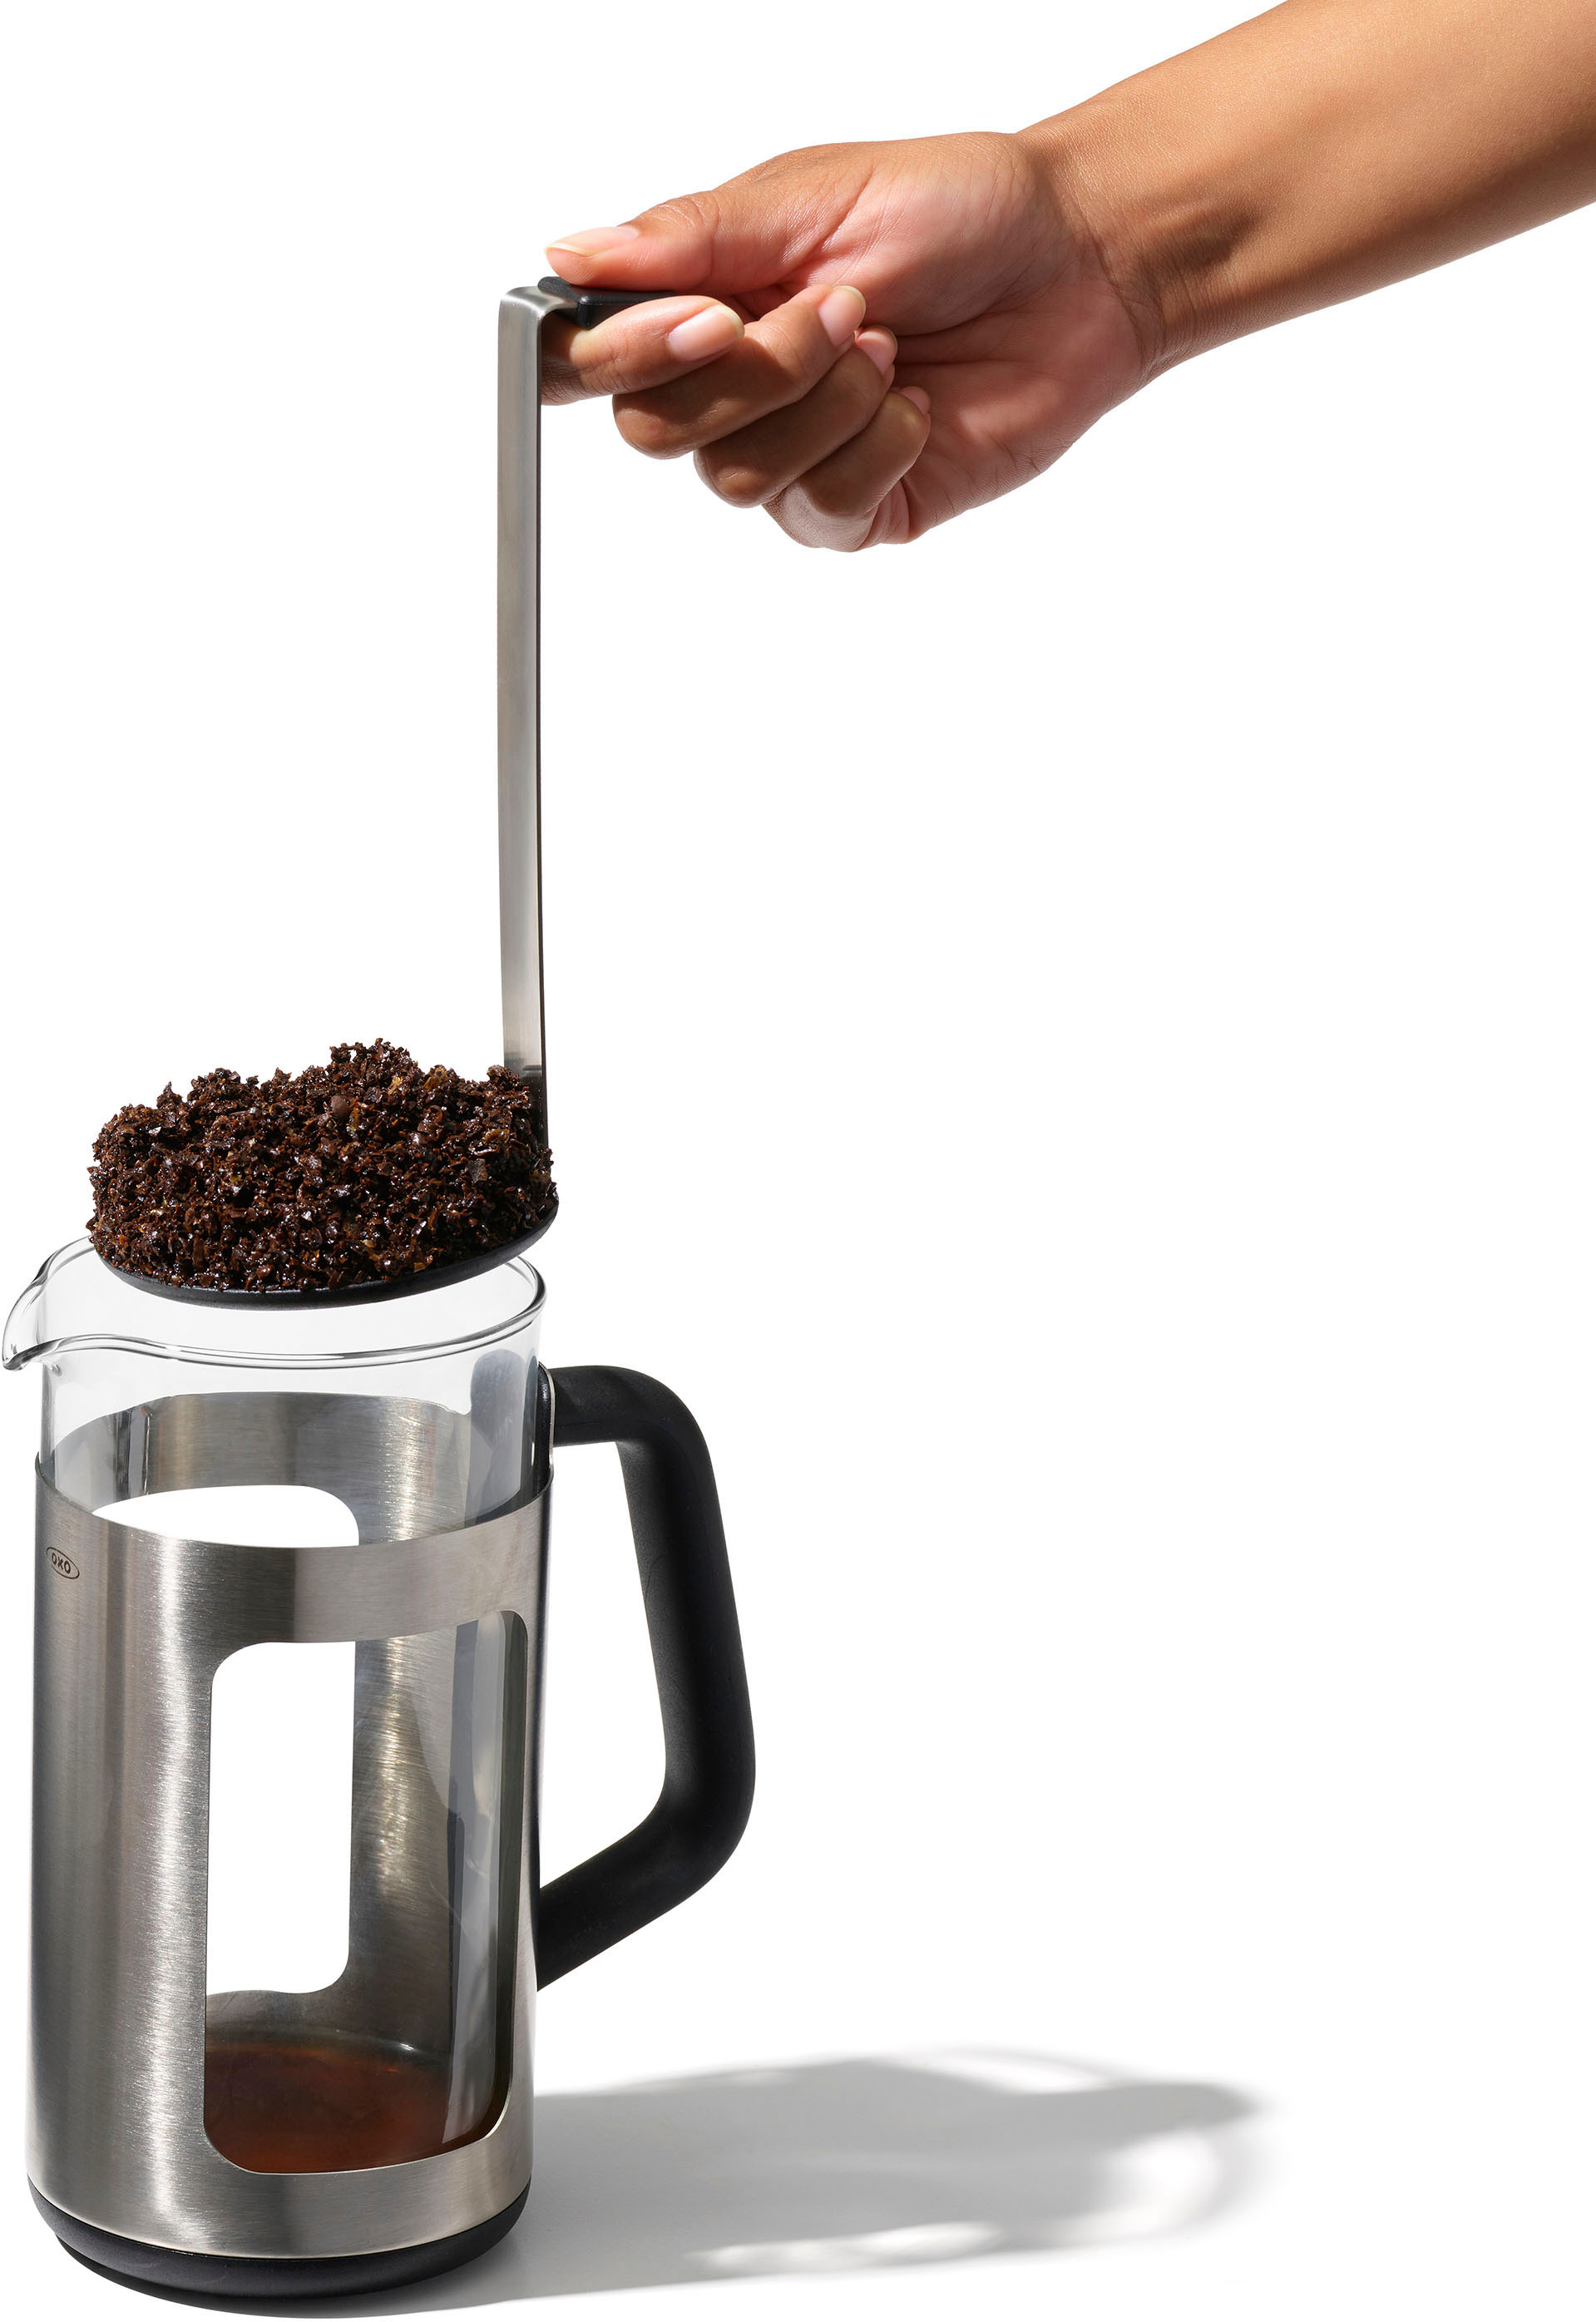  GROSCHE ZURICH French Press Coffee Maker - Black (34 fl oz, 8  Demitasse Cup), Stainless Steel Coffee Filter, 18/8 Double Walled  Stainless Steel French Press Coffee Maker